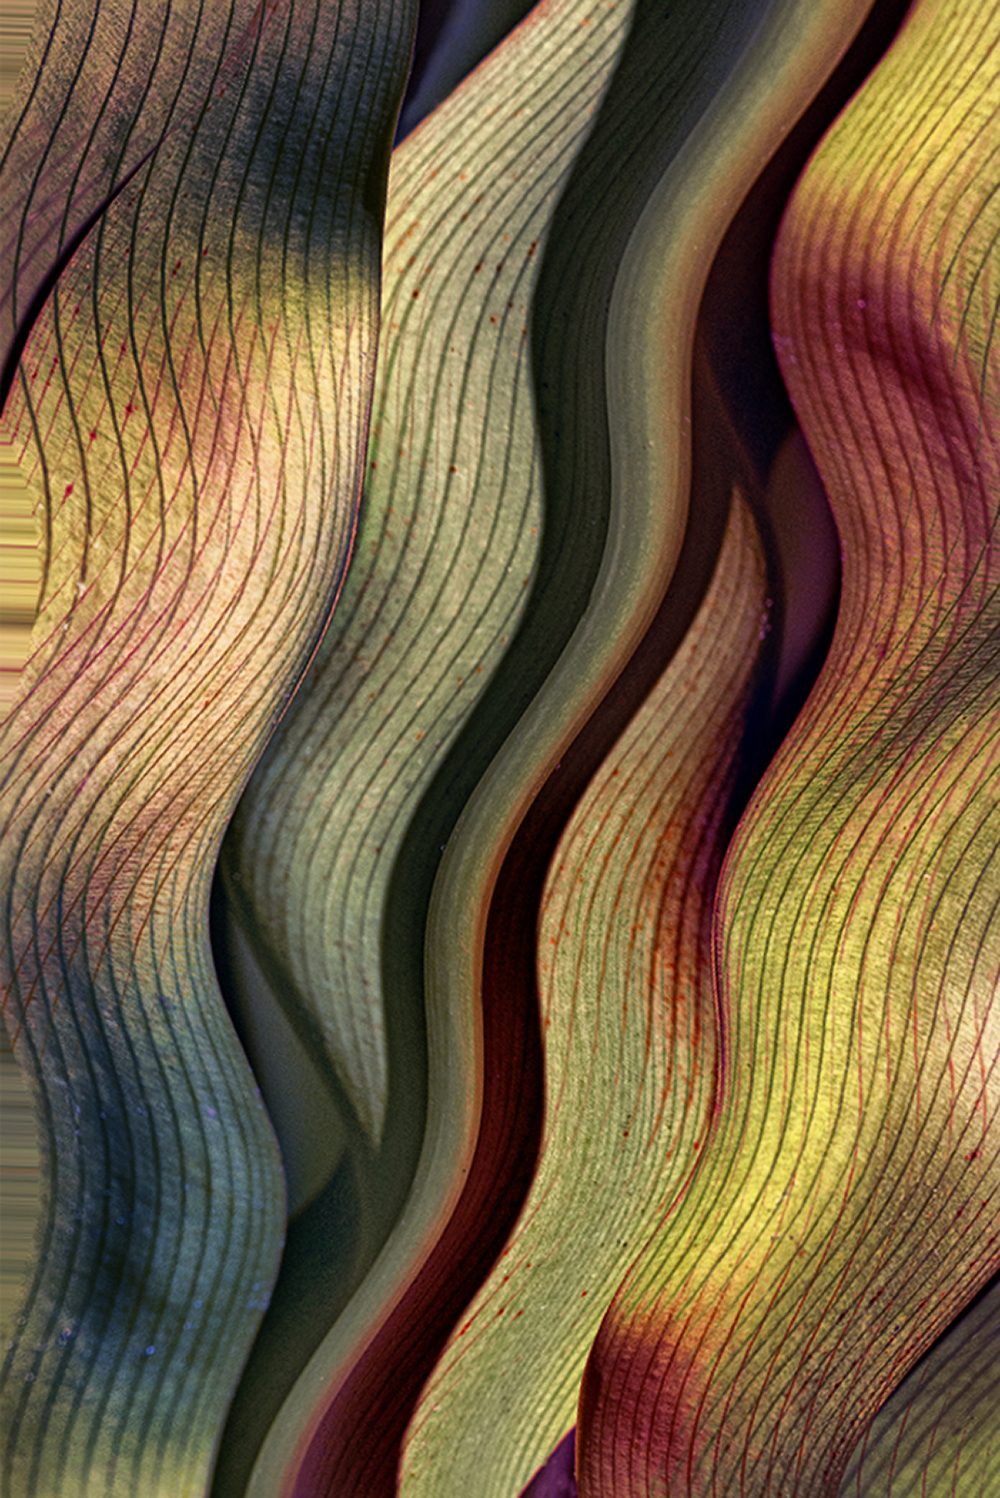 Leaf Curves by Val Walker ARPS